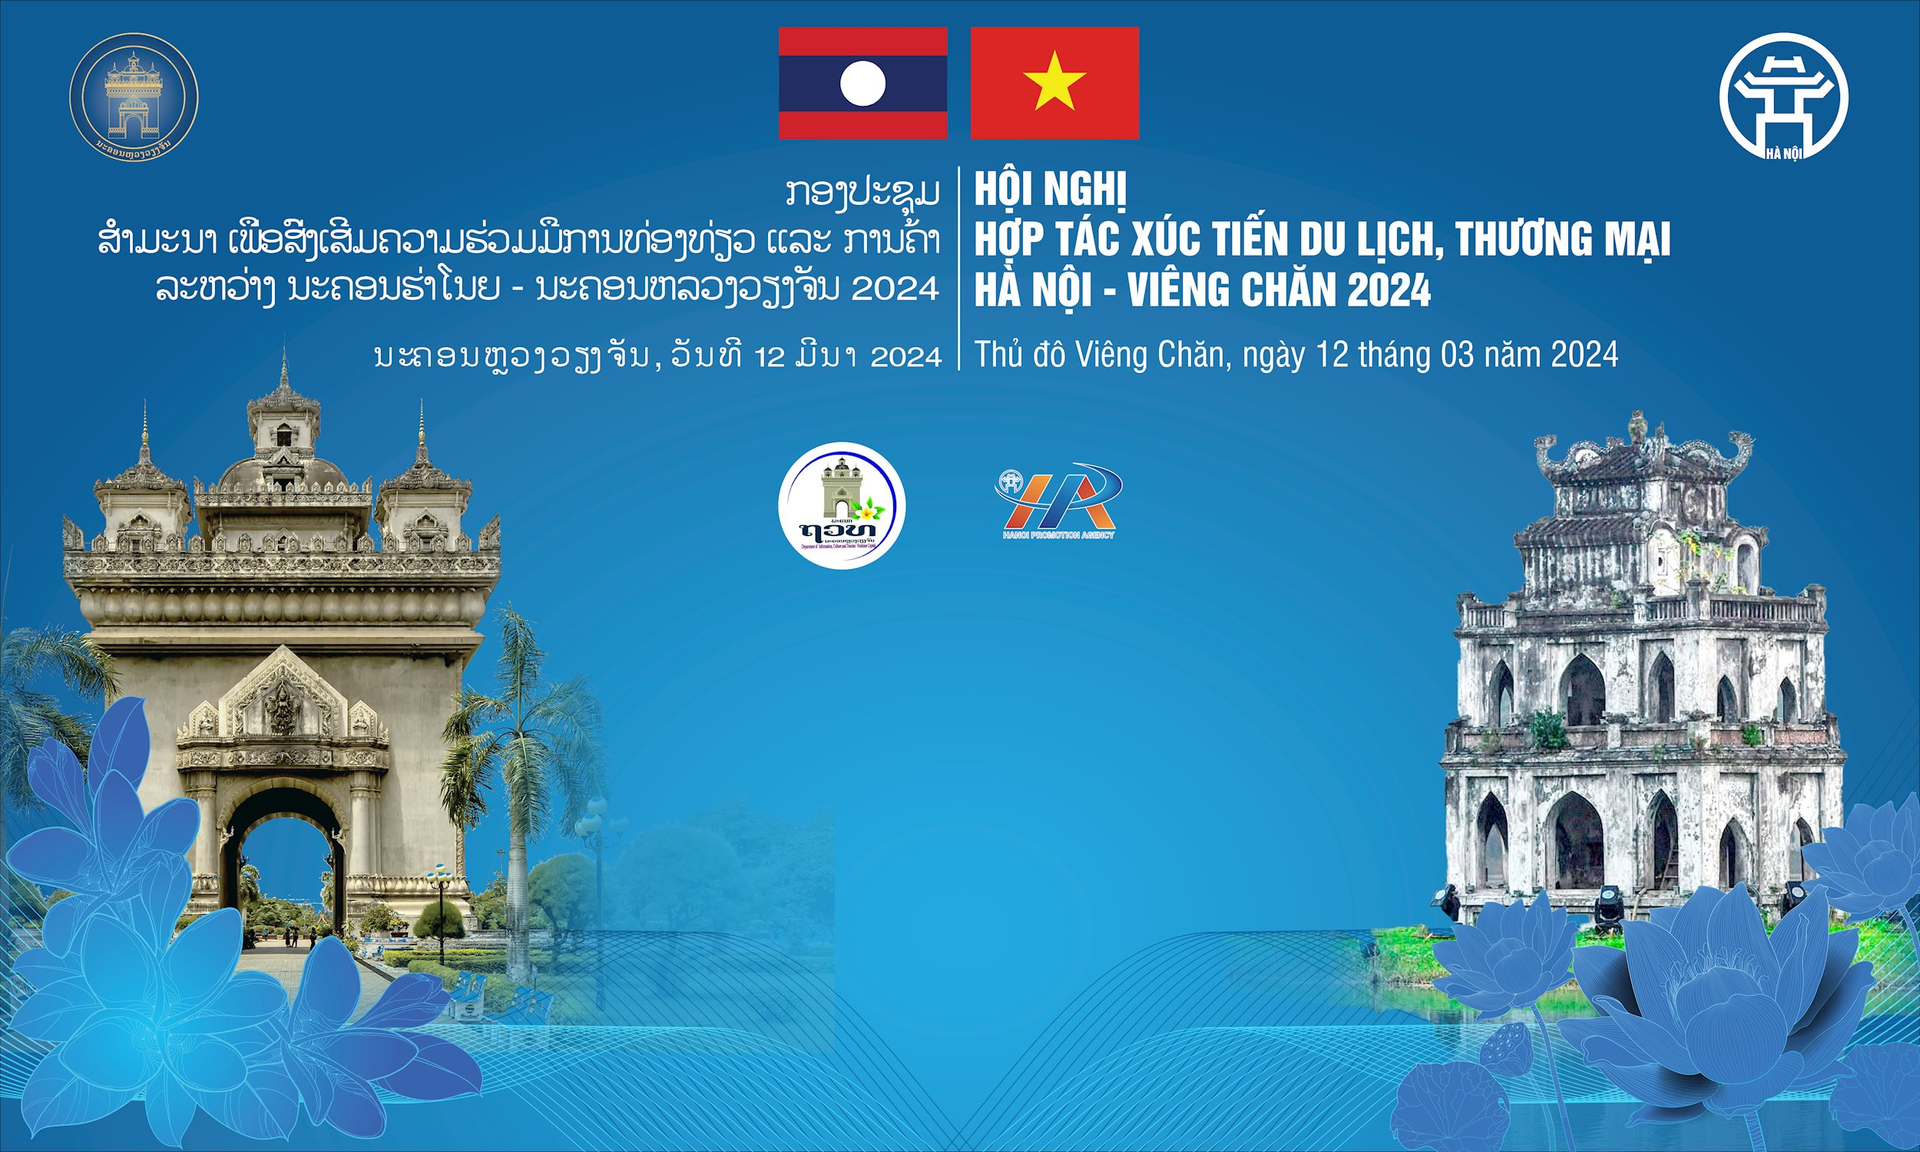 Tổ chức Hội nghị hợp tác xúc tiến du lịch, thương mại Hà Nội - Viêng Chăn 2024